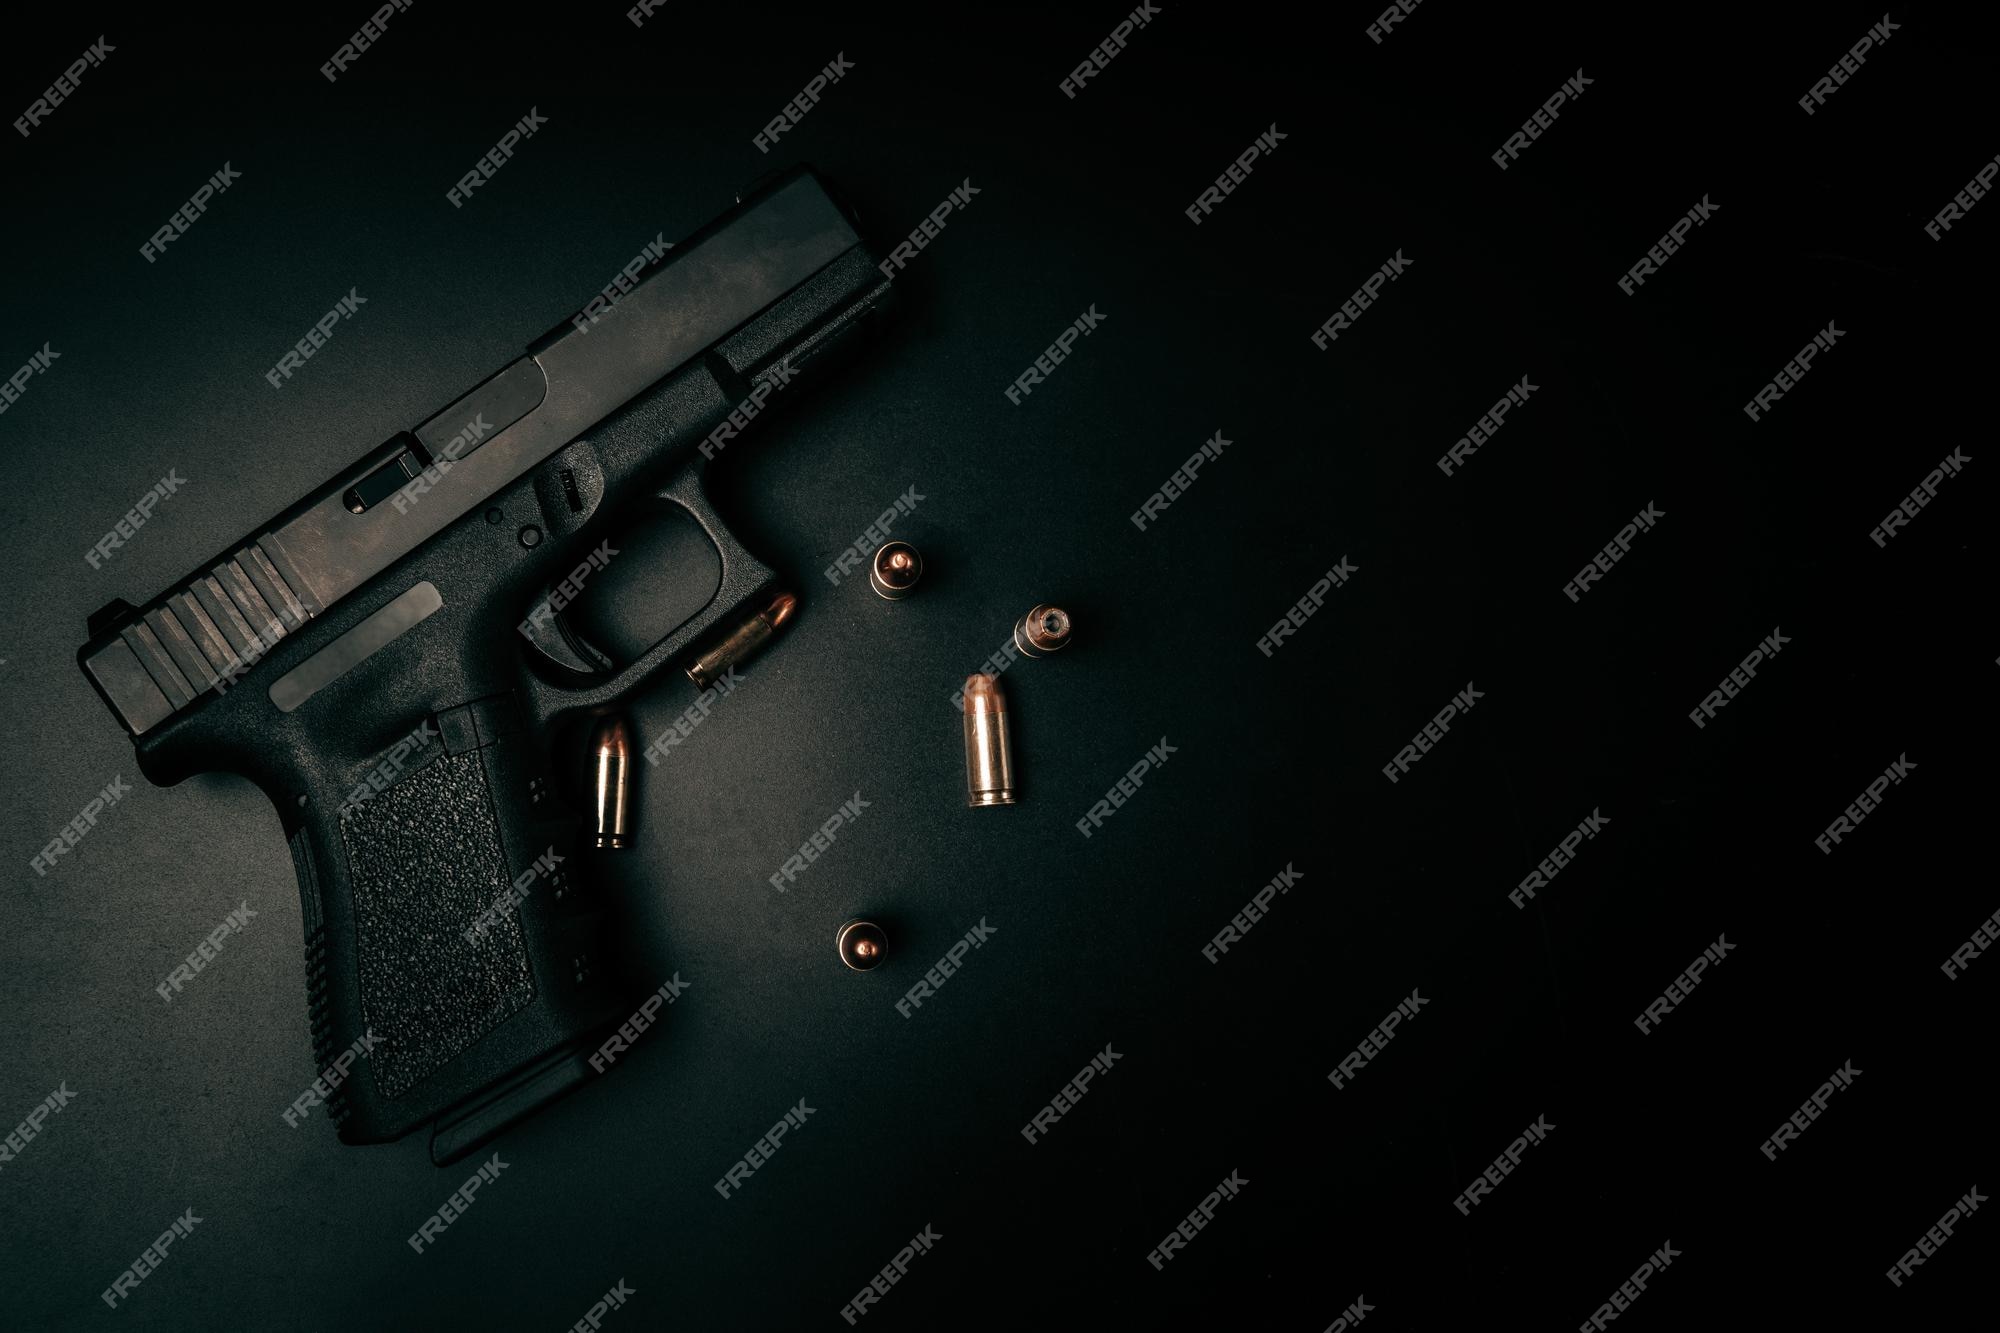 9mm pistol wallpaper hd